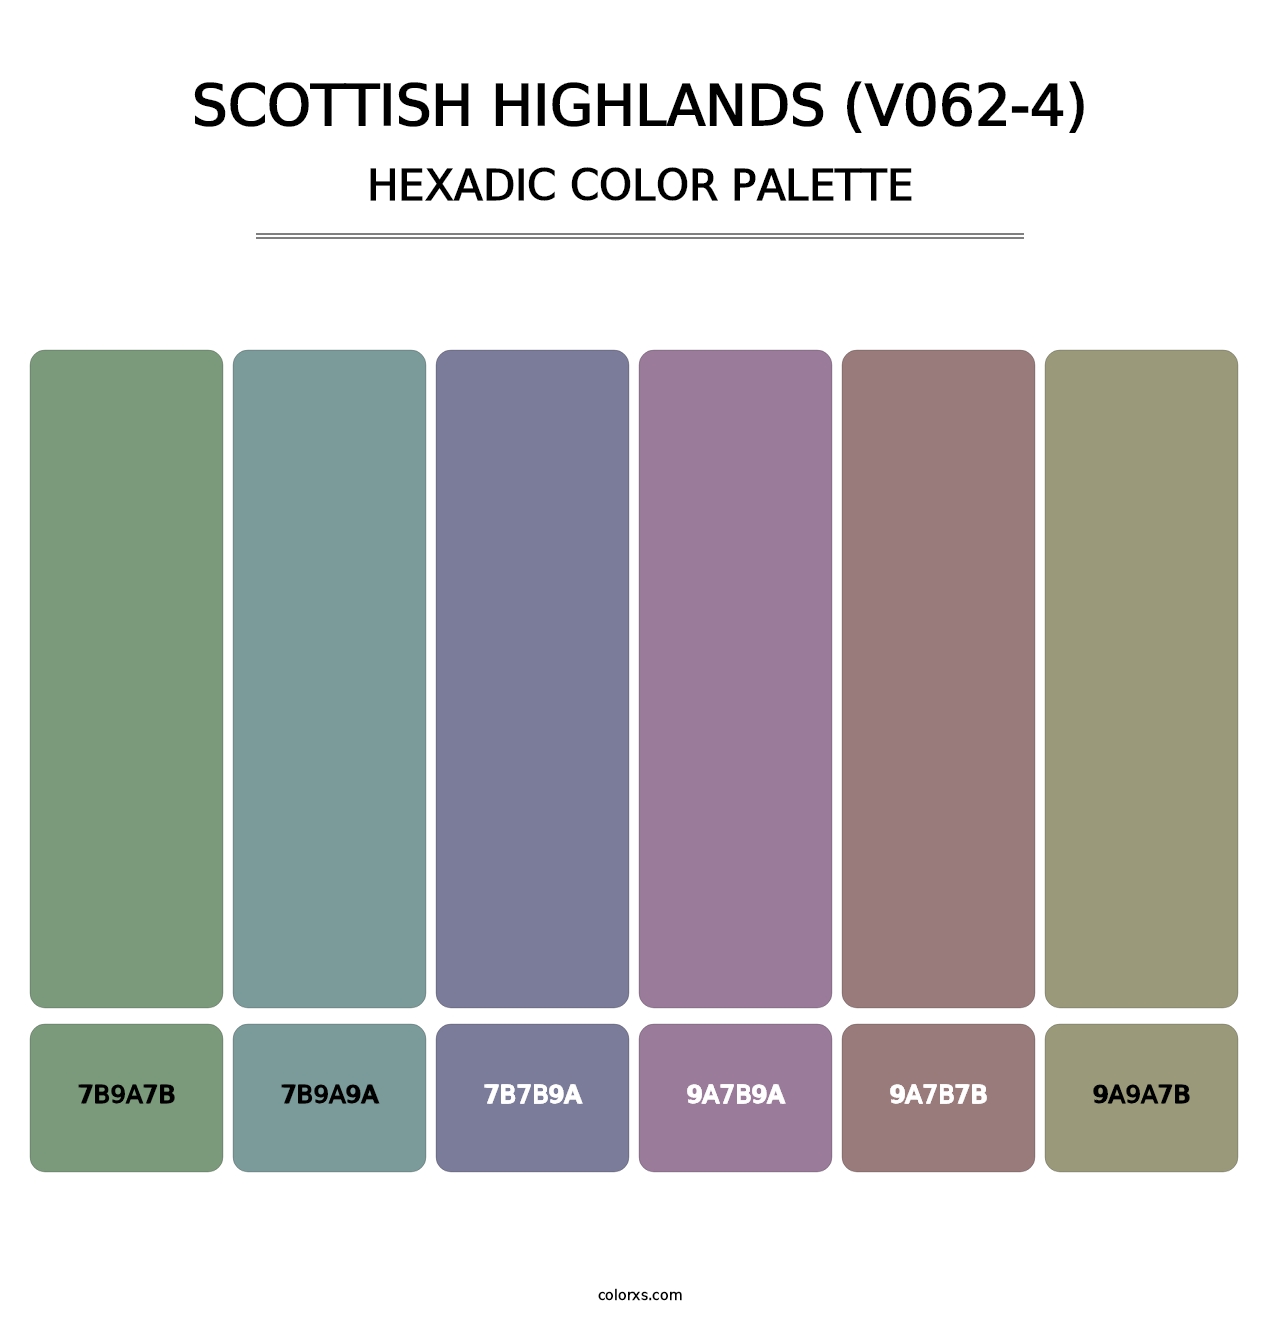 Scottish Highlands (V062-4) - Hexadic Color Palette